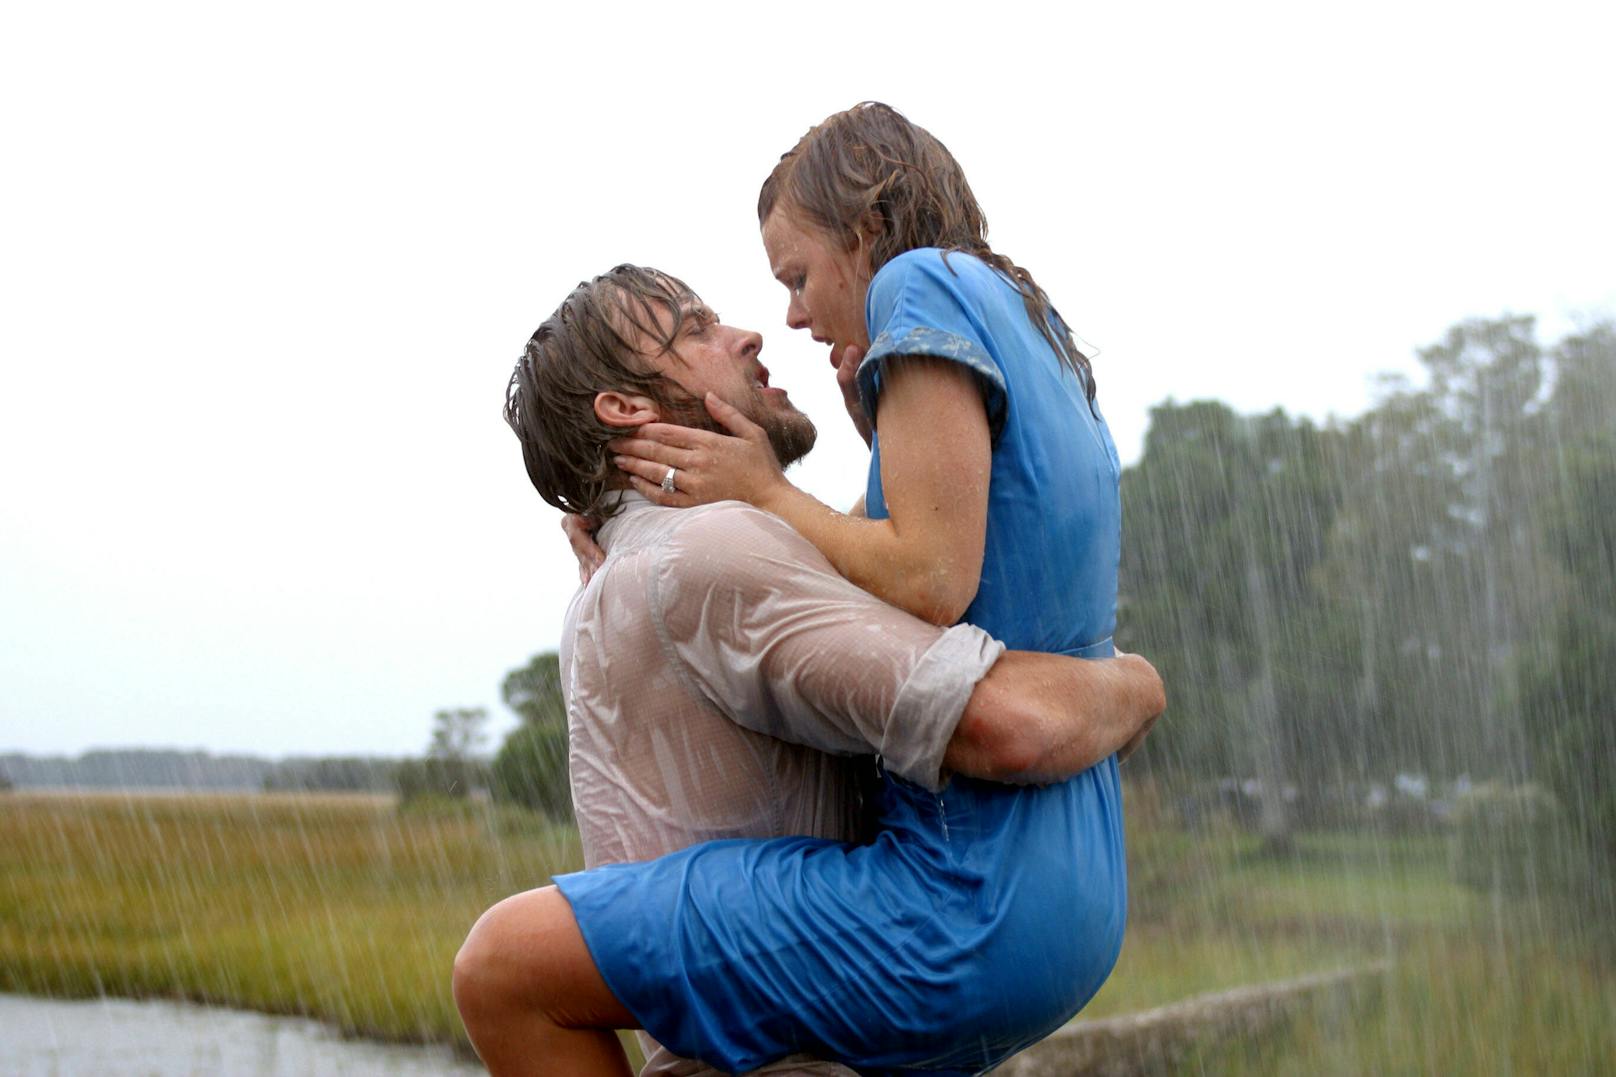 So viel Leidenschaft, wie <strong>Ryan Gosling</strong> (li.) und <strong>Rachel McAdams</strong> in <em>"Wie ein einziger Tag" </em>versprühen, kann nicht nur gespielt sein. Bei den Dreharbeiten befetzten sie sich so sehr, dass sie für ein therapeutisches Schreiduell in einen Raum gesperrt wurden. Für eine kurze Zeit datete sich das Paar sogar, doch zu einer lebenslangen Romanze kam es nur auf Leinwand.